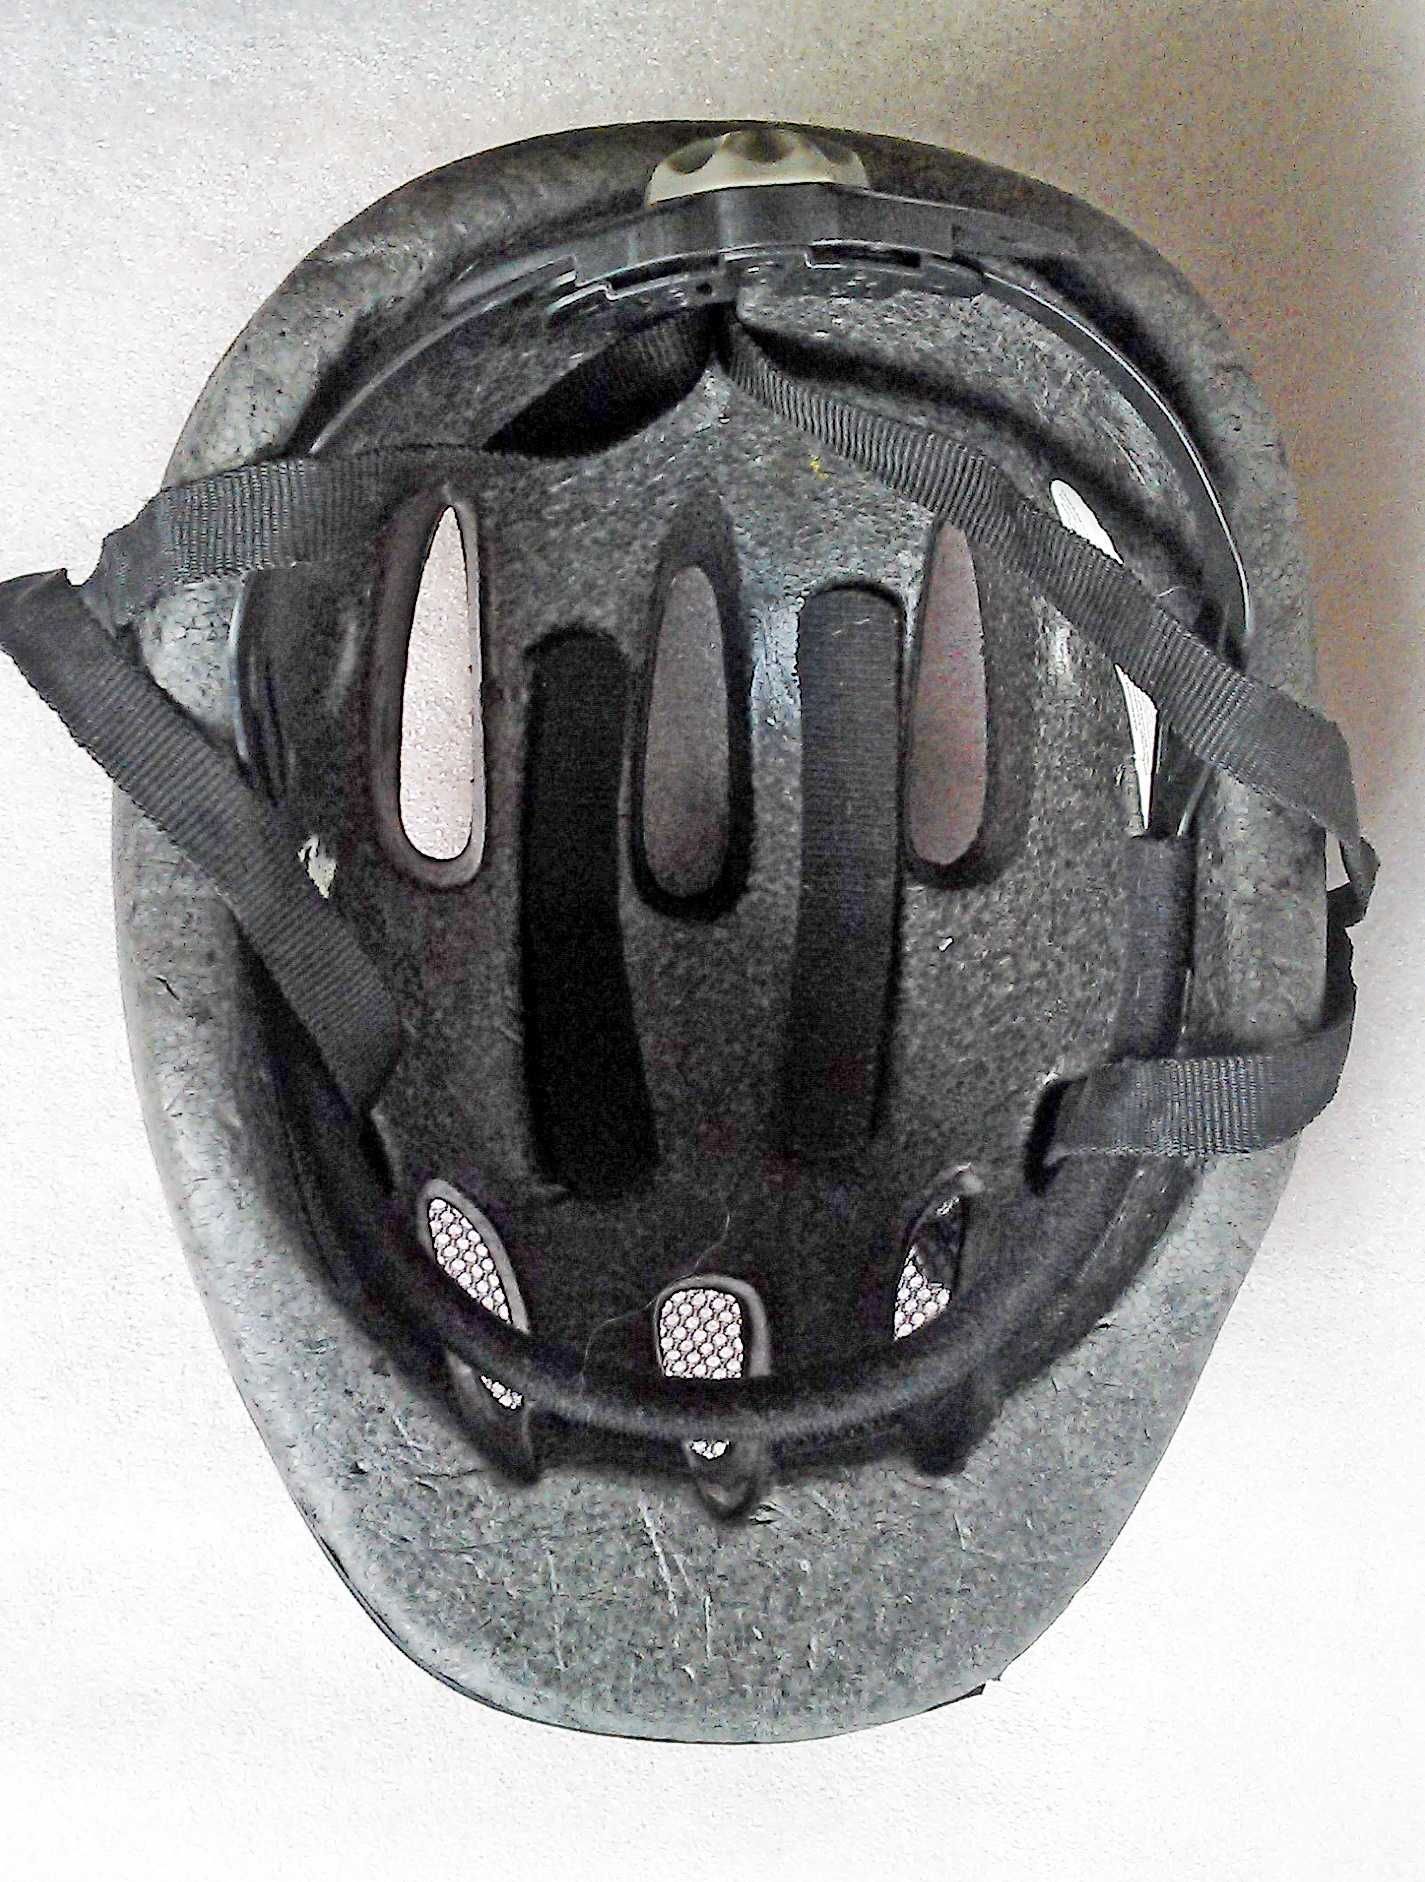 велошлем шлем велосипедный р. S/M .52-57см регулировка окружности